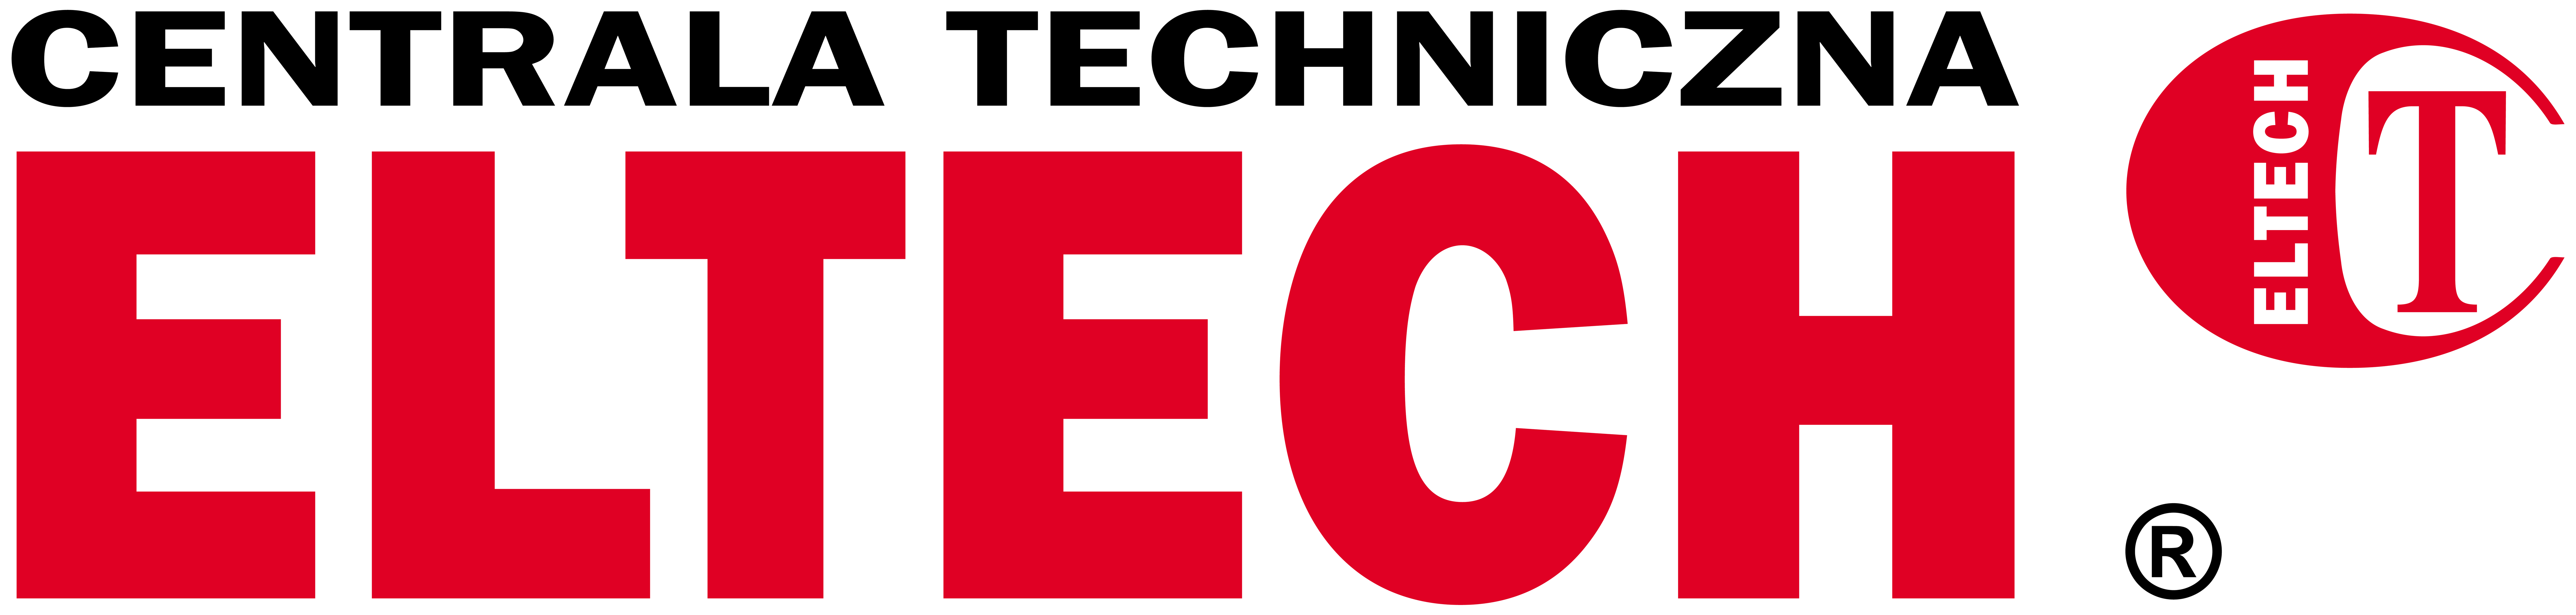 Partner Handlowy Bosch Pobierz za darmo Centrala Techniczna ELTECH Sp. z o.o. ul. Fabryczna 1-3, 58-100 Świdnica tel. 74 858 27 00 fax 74 858 27 01 eltech@eltech.com.